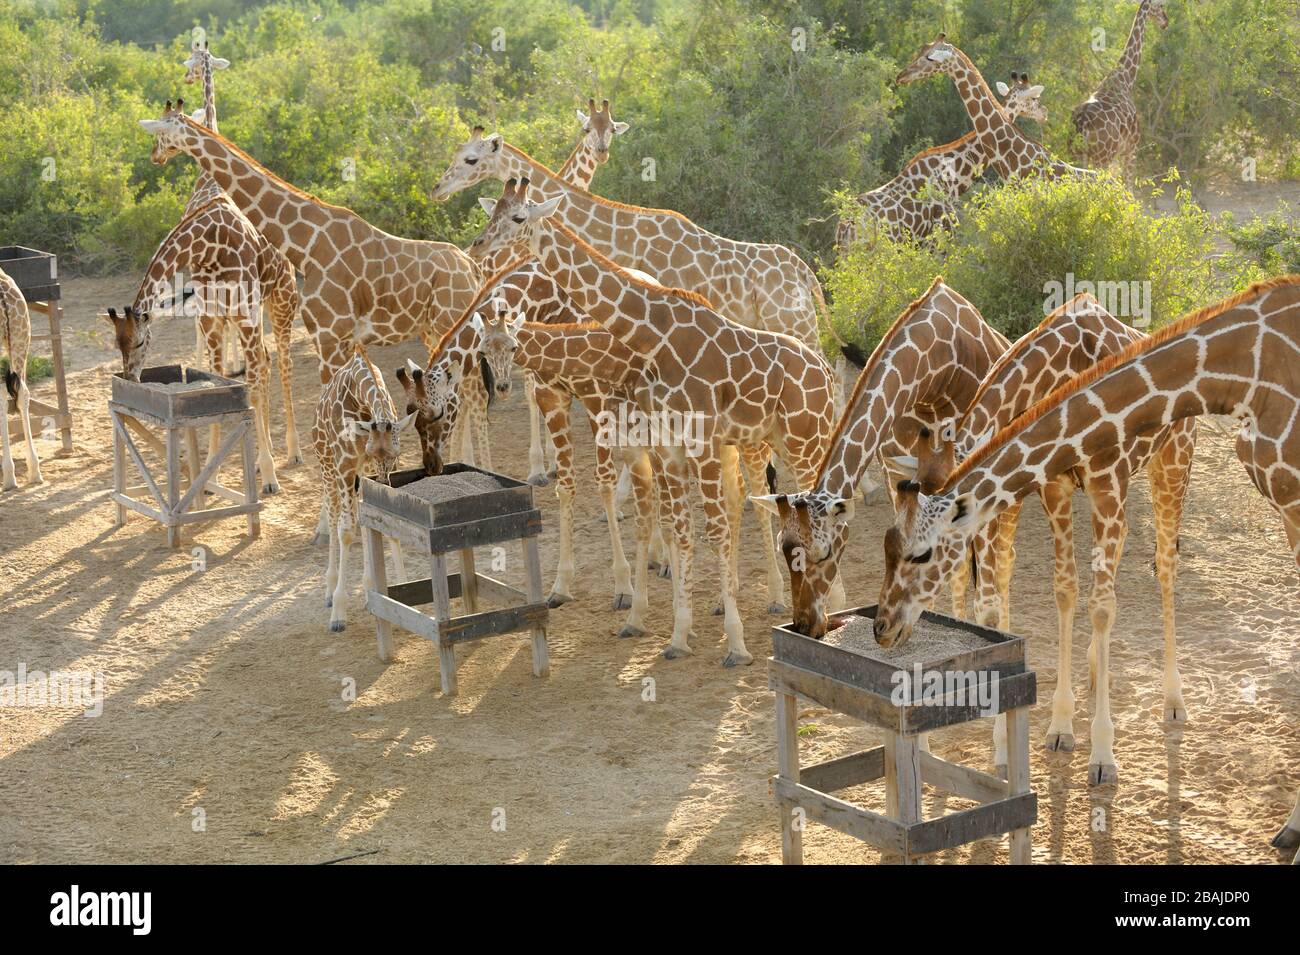 Adultes et jeunes girafes (Giraffa camelopardalis) à la station d'alimentation de l'île Sir Bani Yas, Abu Dhabi, Emirats Arabes Unis, novembre Banque D'Images